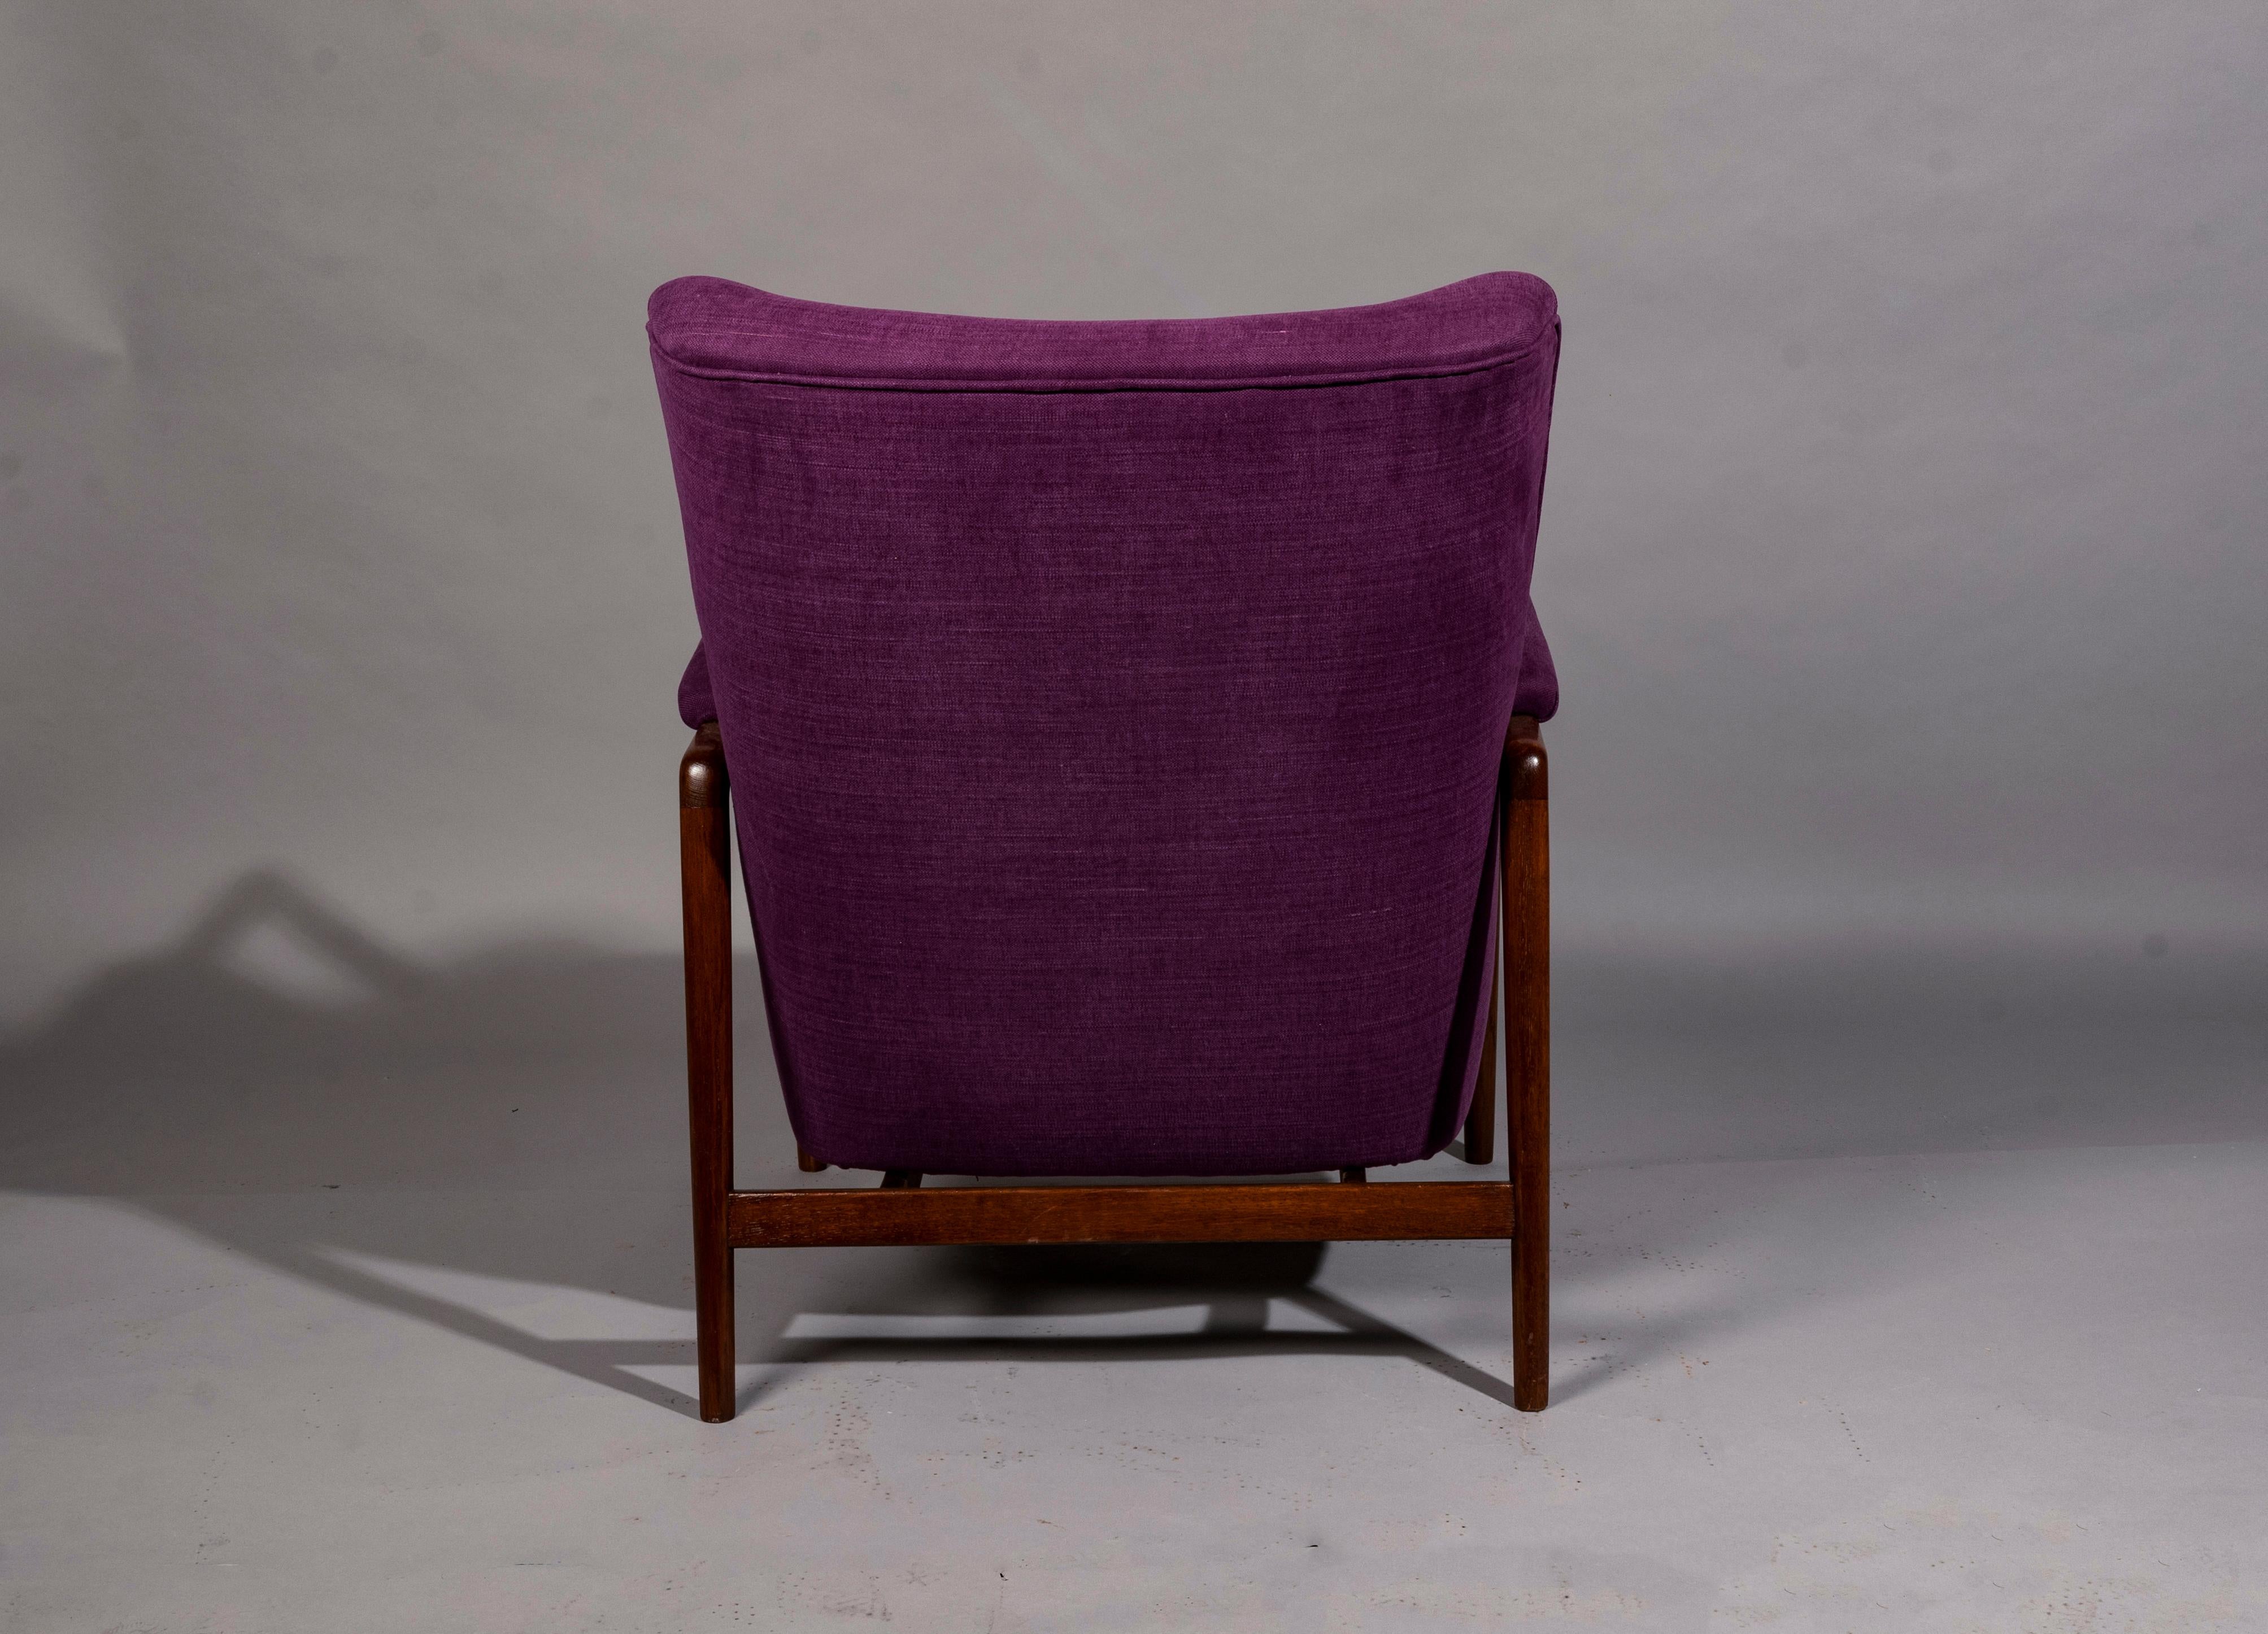 Midcentury lounge chair designed by Kurt Olsen, Denmark 1950s, solid oak frame reupholstered Dominique Kieffer fabric.